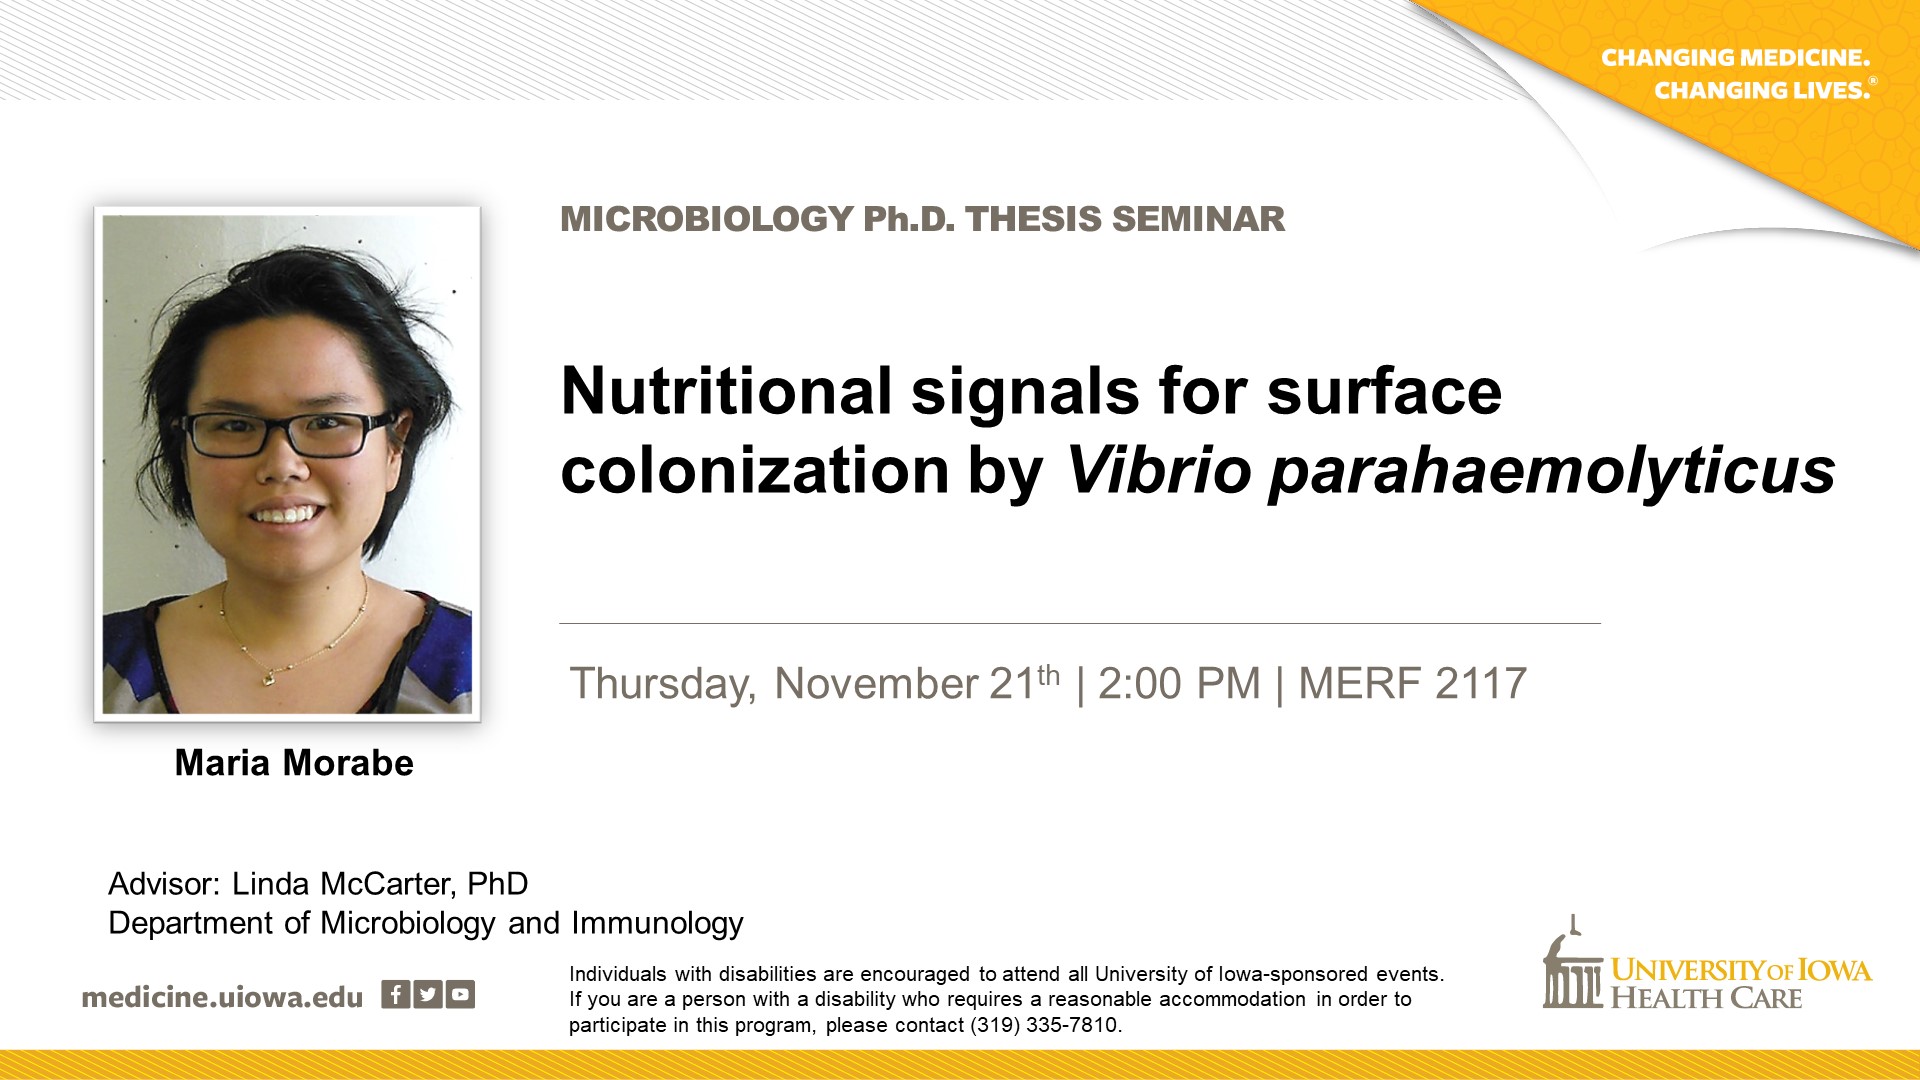 Maria Morabe on Thursday, November 21st  at 2:00 pm in 2117 MERF,  for her Ph.D. seminar 